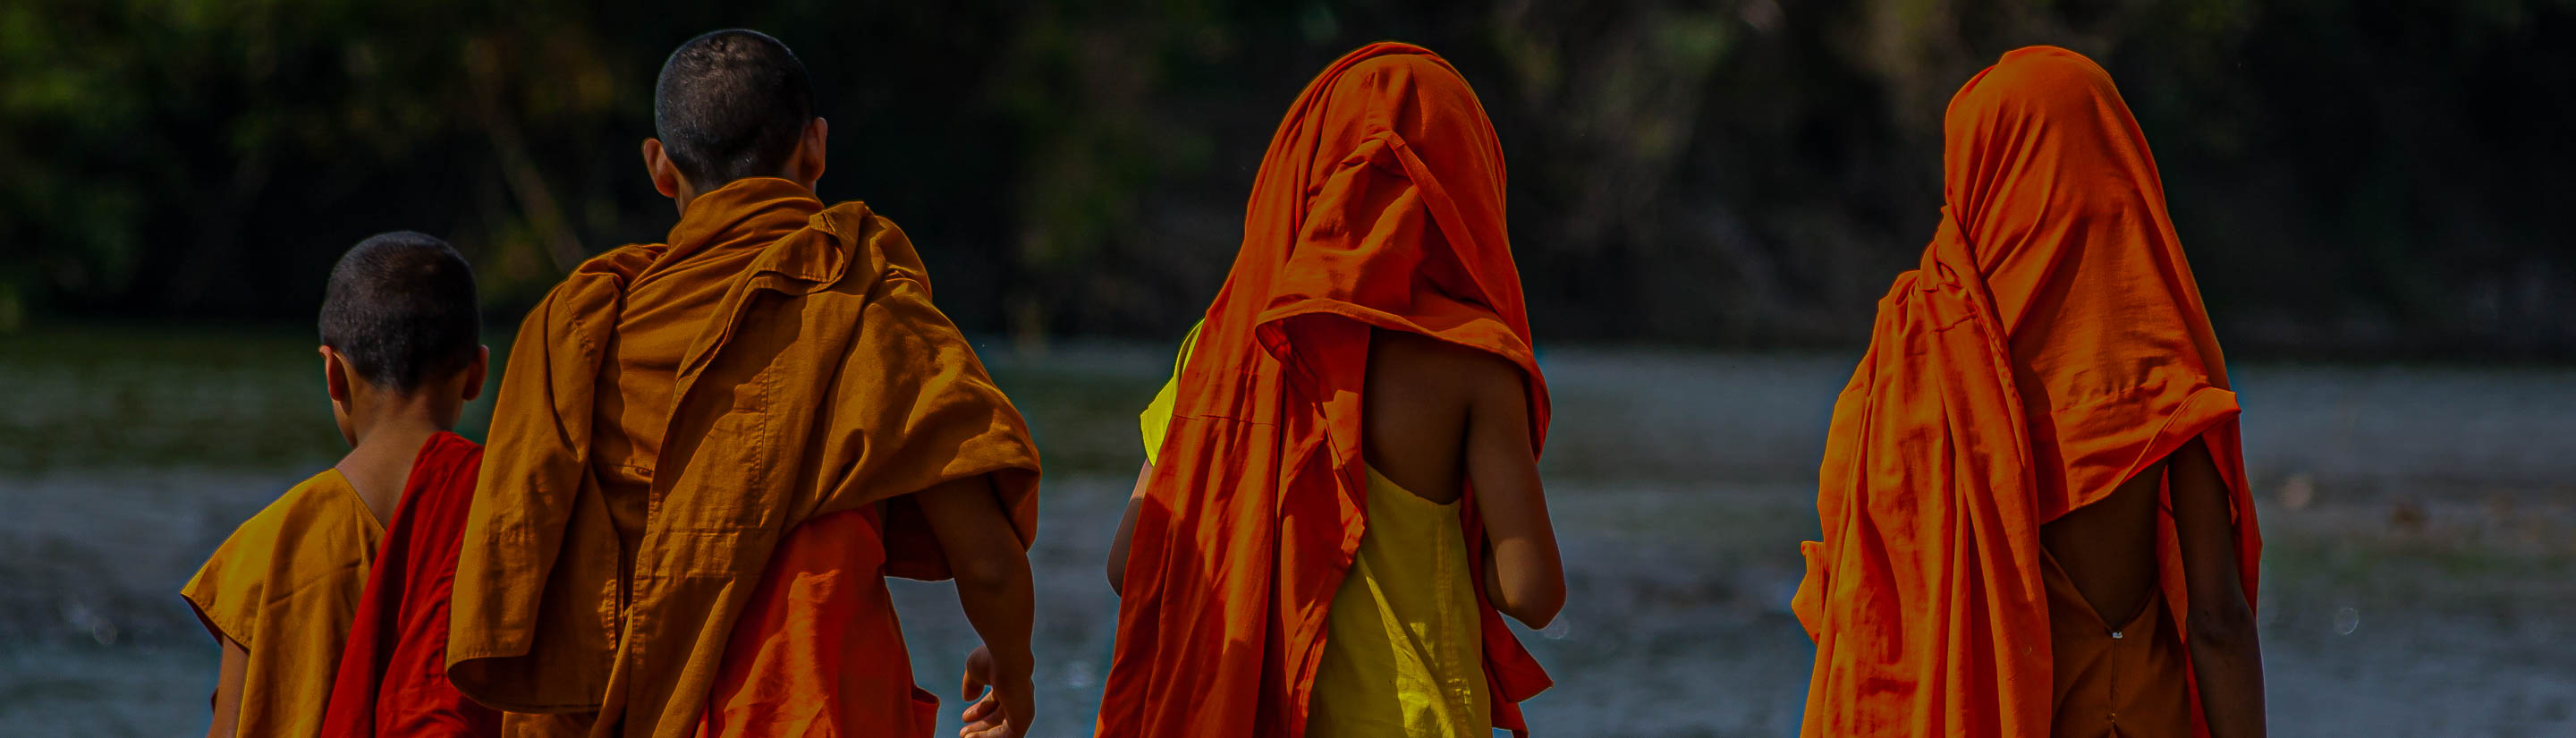 Novizen der Mönche in Laos mit gelb-orangem Gewand.